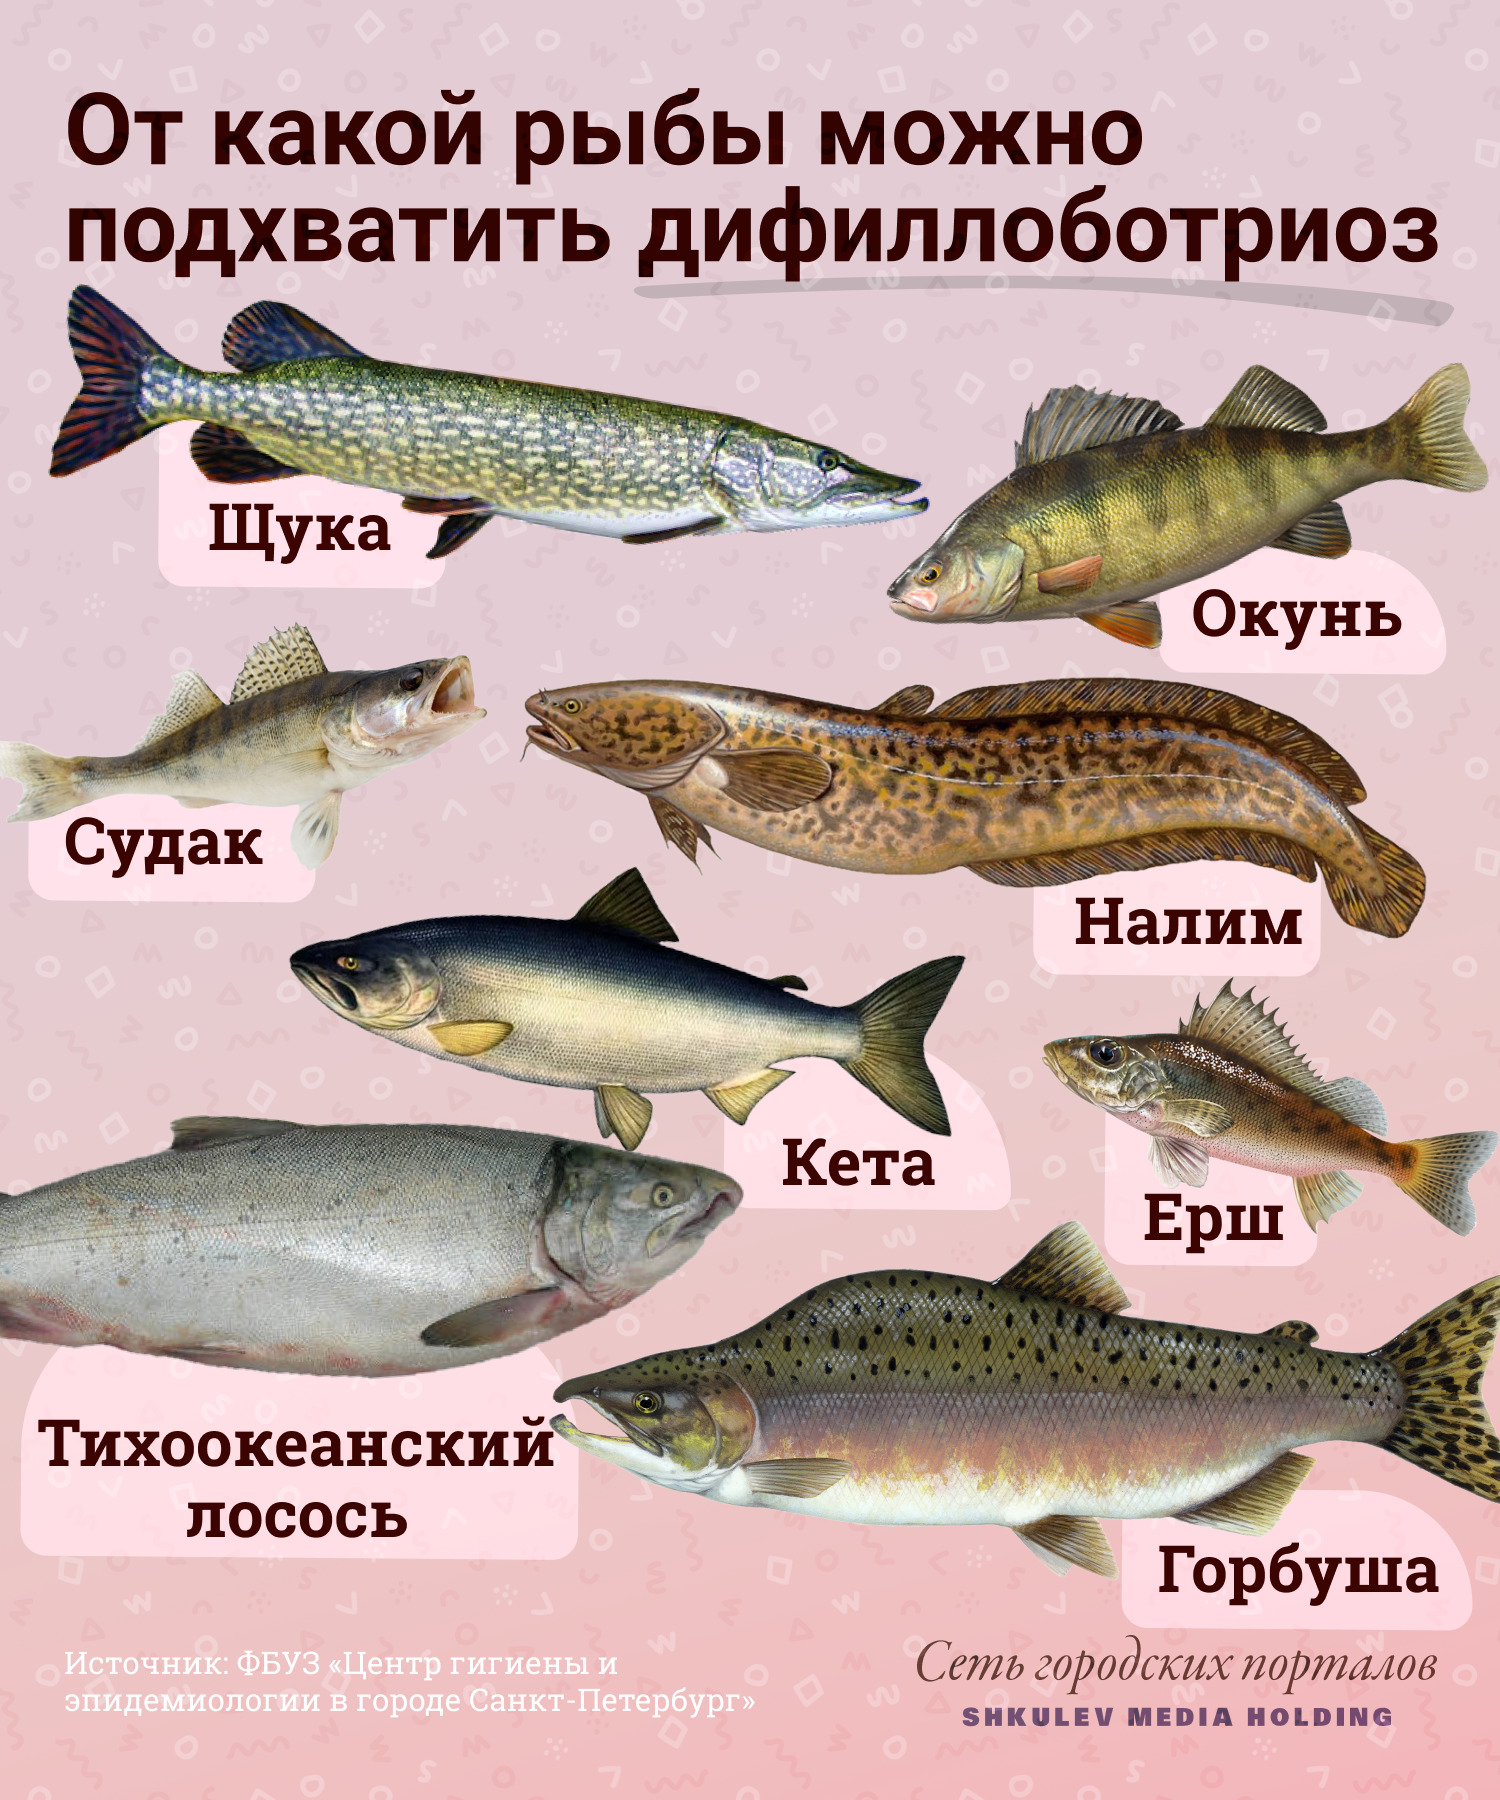 Описторхоз в морской рыбе